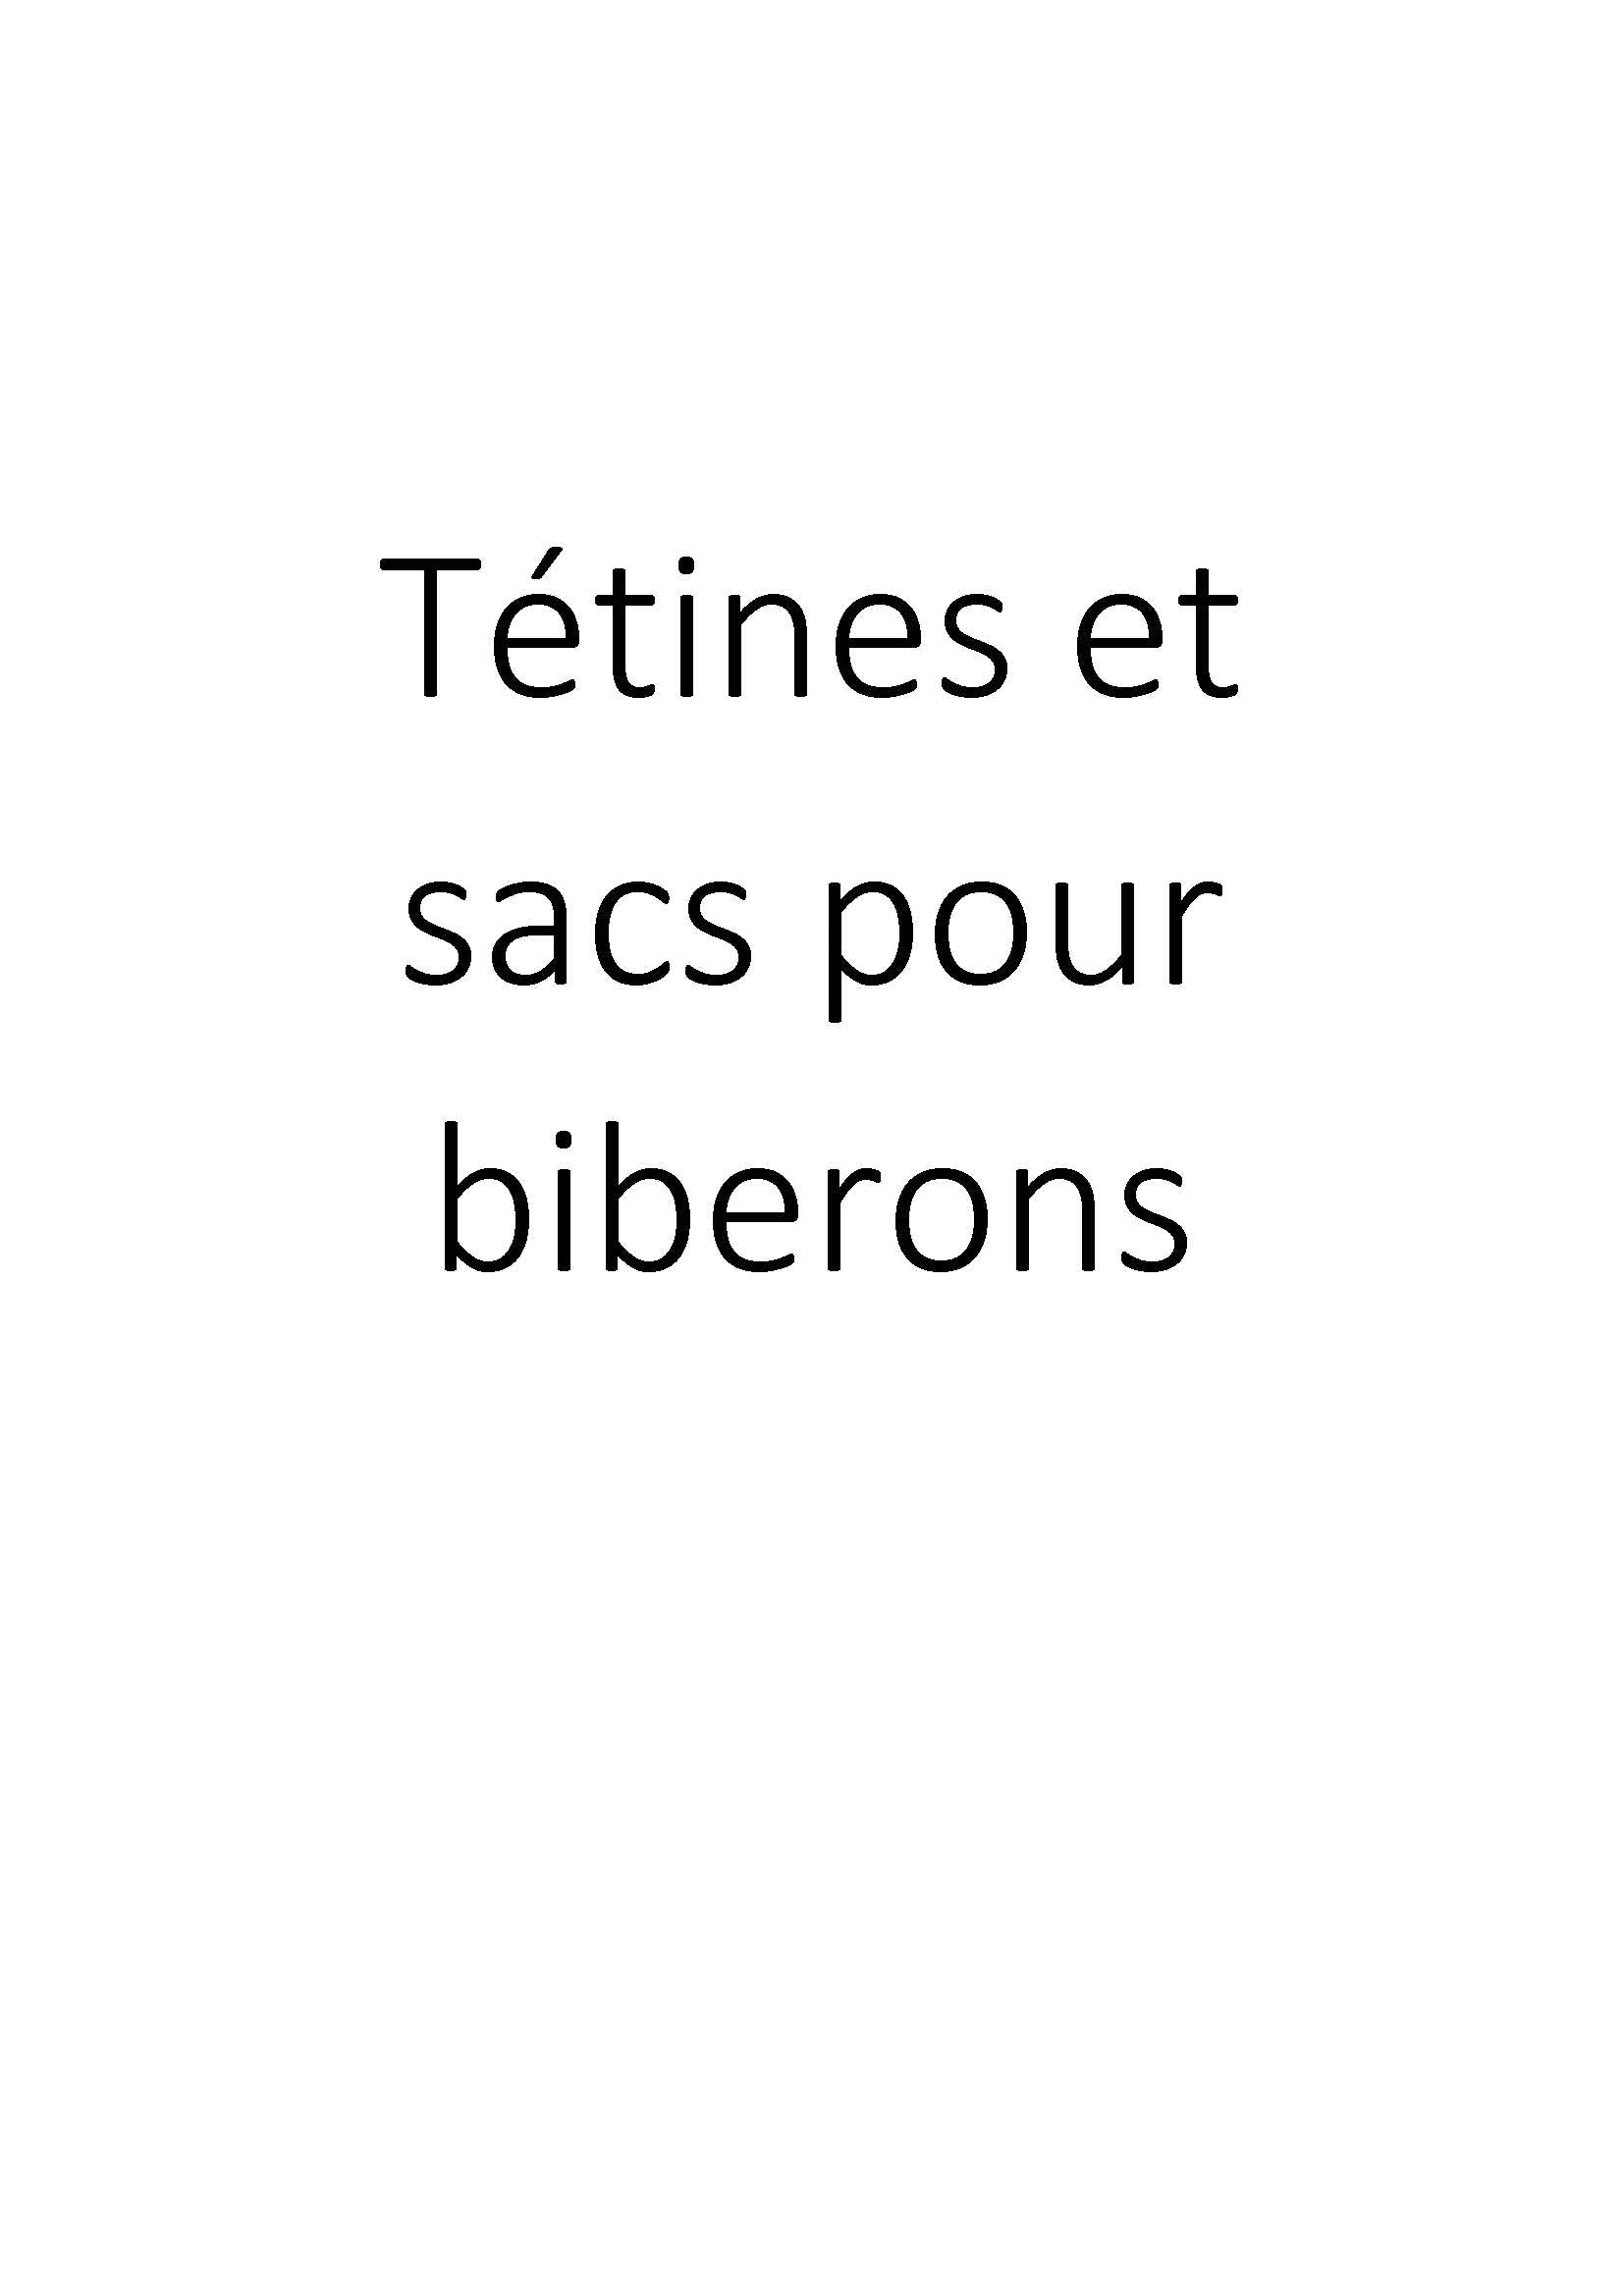 Tétines et sacs pour biberons clicktofournisseur.com